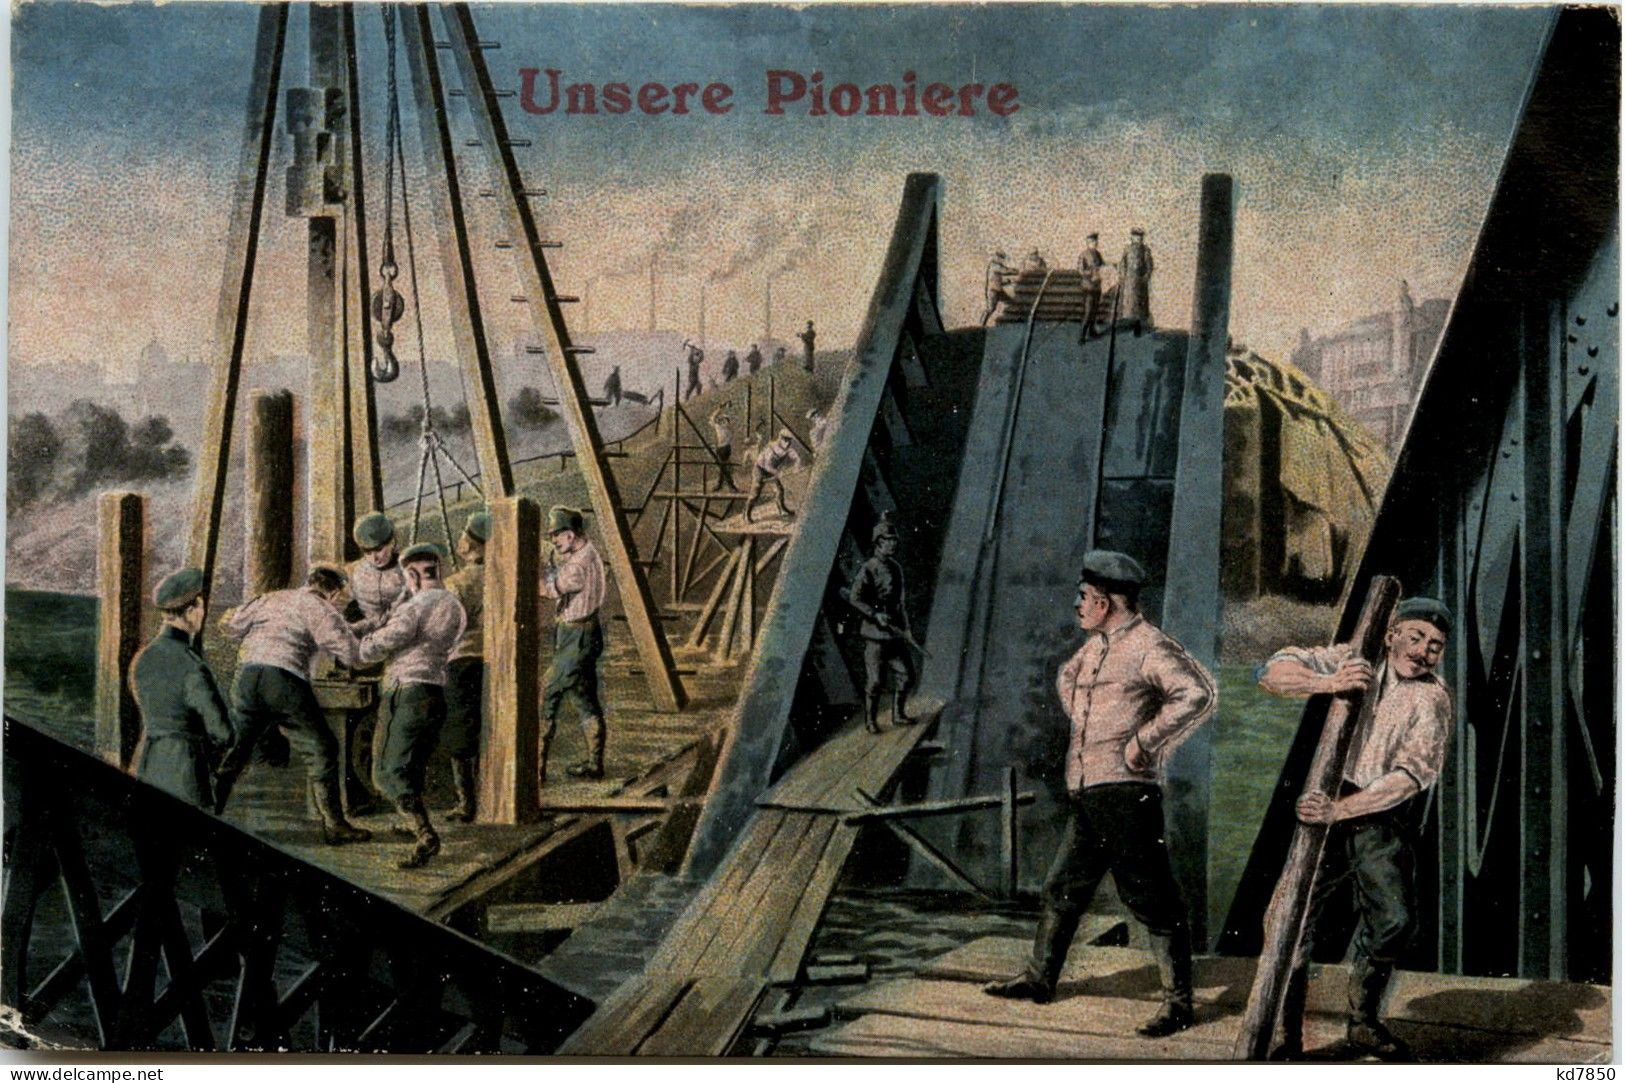 Unsere Pioniere - War 1914-18